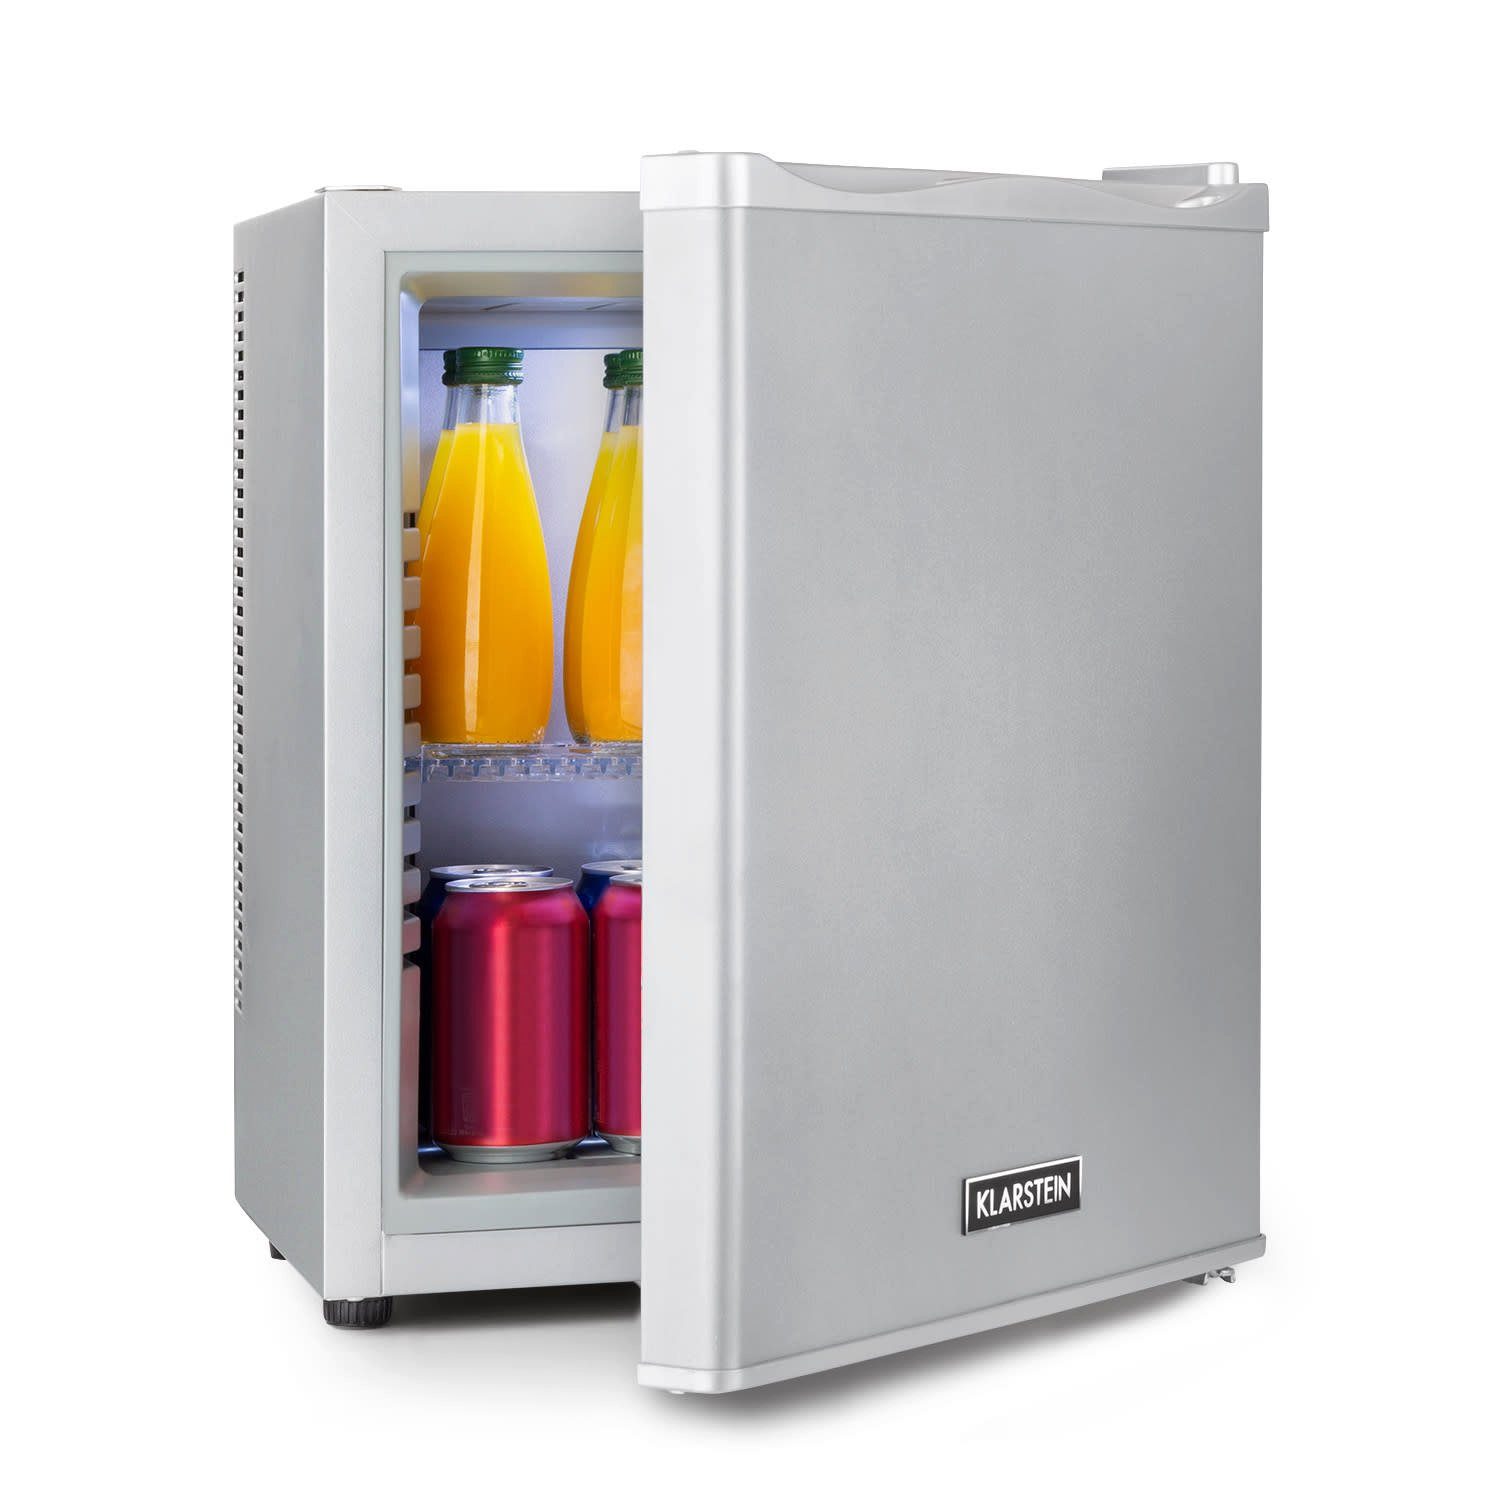 Klarstein Kühlschrank Happy Hour Minibar 5-15°C EEK G lautlos 23dB  LED-Licht 10035240, 47 cm hoch, 38 cm breit online kaufen | OTTO